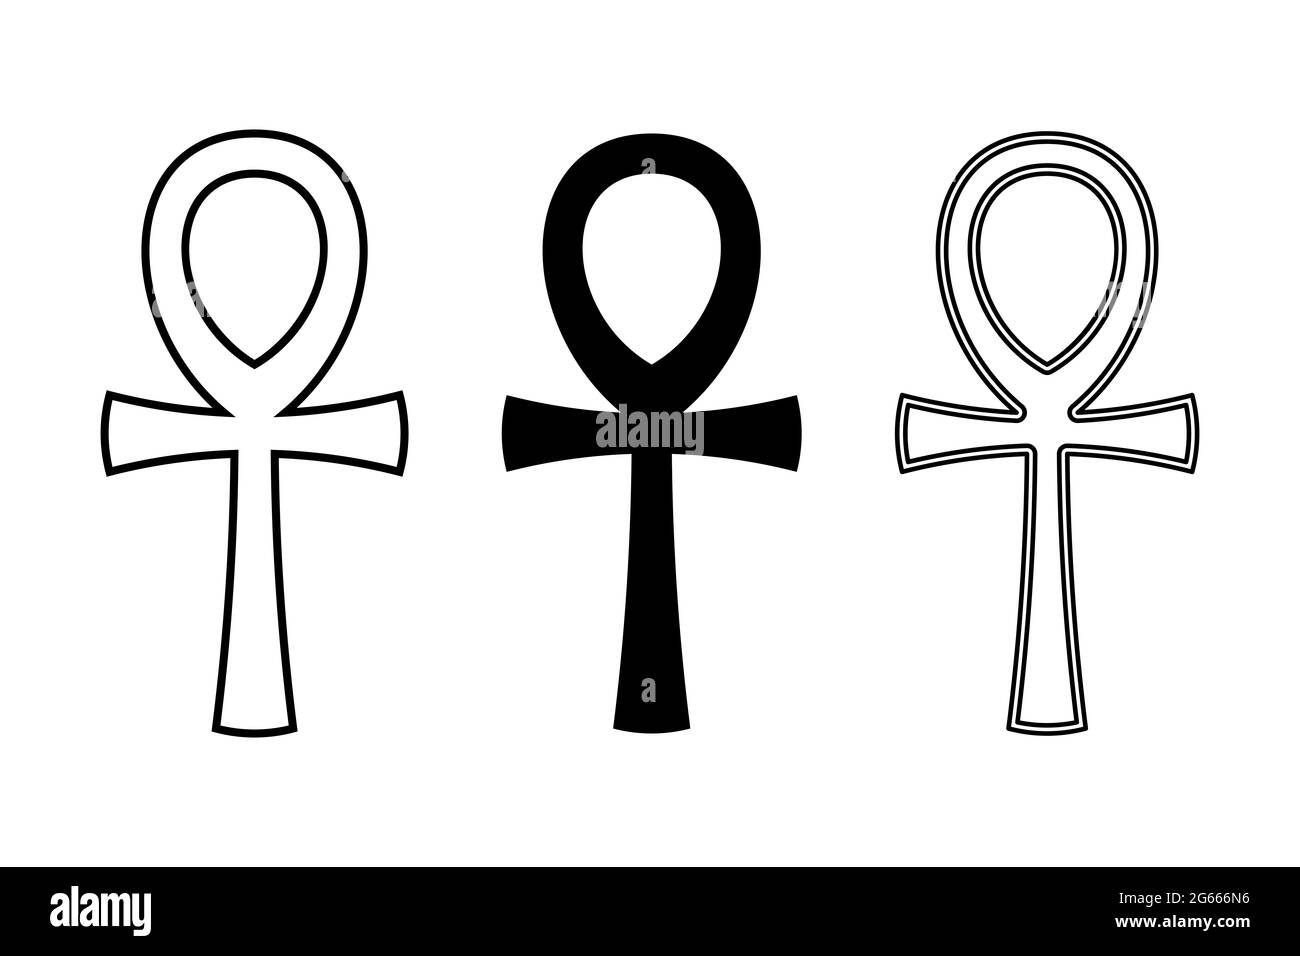 Drei ankh-Symbole. Auch Schlüssel des Lebens genannt, ein Kreuz mit Griff, ein altägyptisches hieroglyphisches Symbol der Götter und Pharaonen, das Leben darstellt. Stockfoto